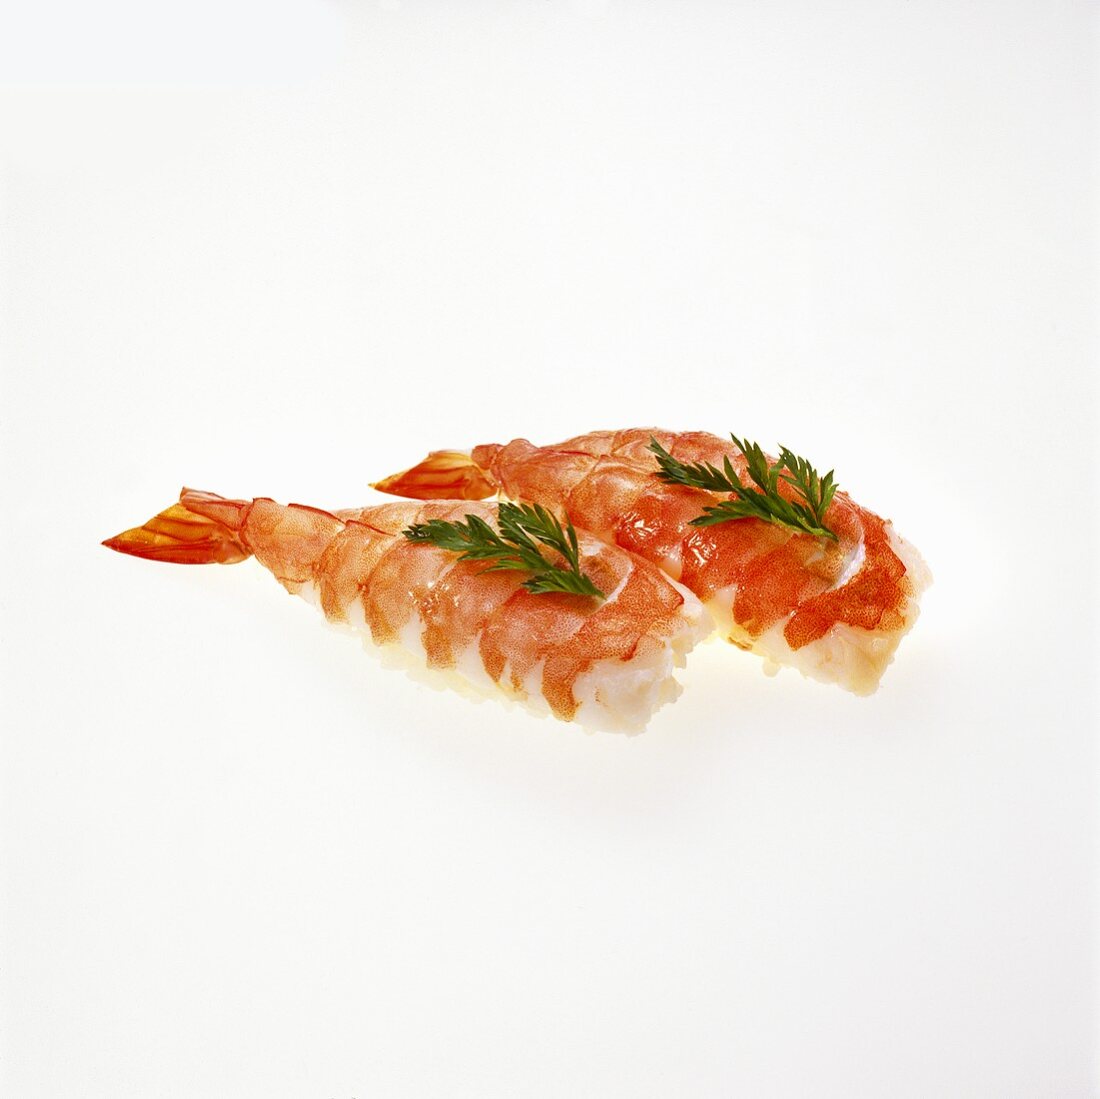 Sushi Shrimp on White Background